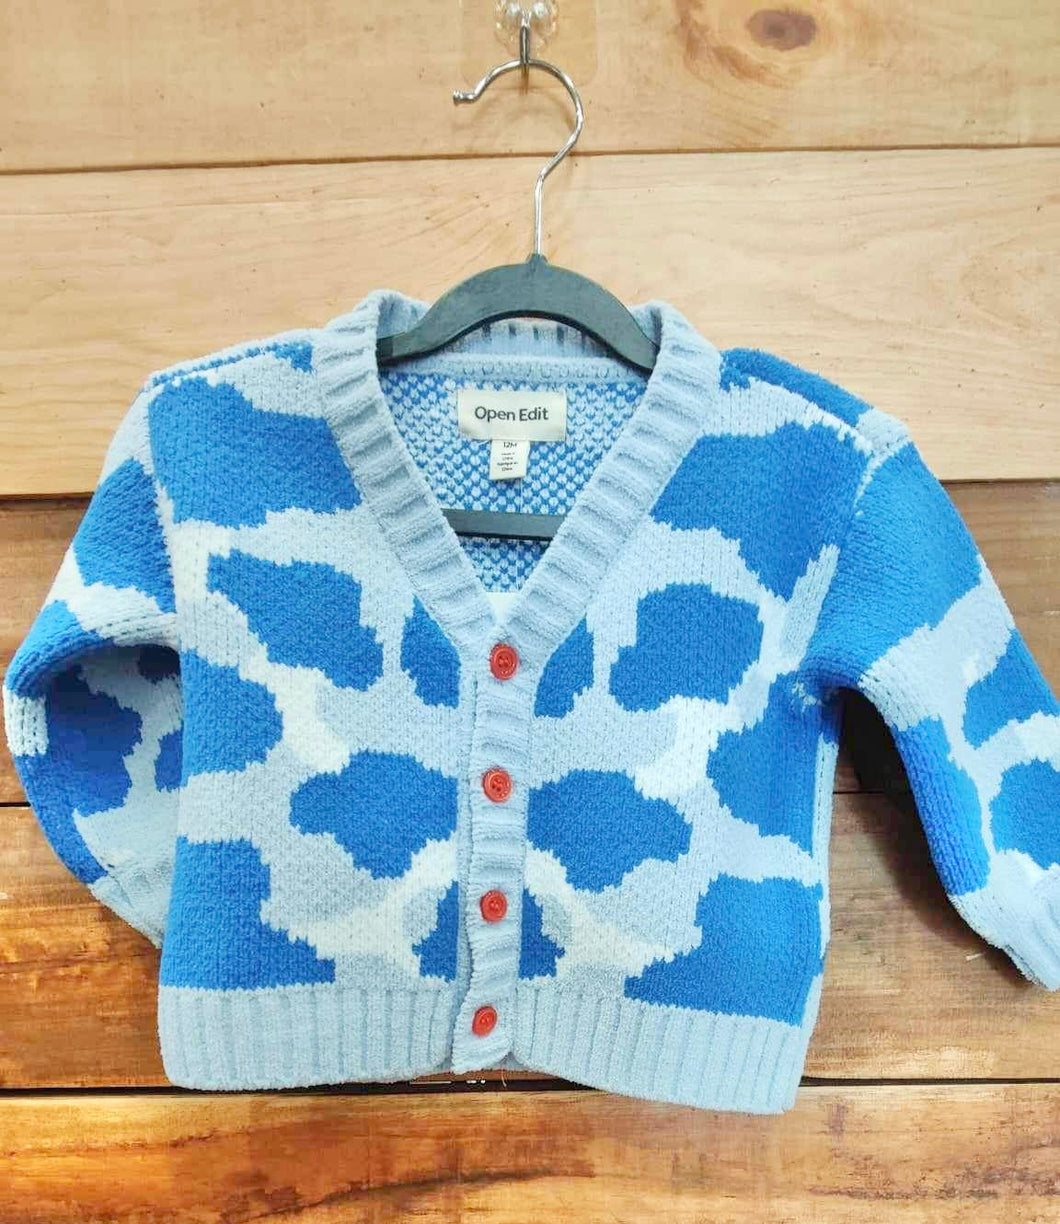 Open Edit Blue Camo Cloud Sweater Size 12m